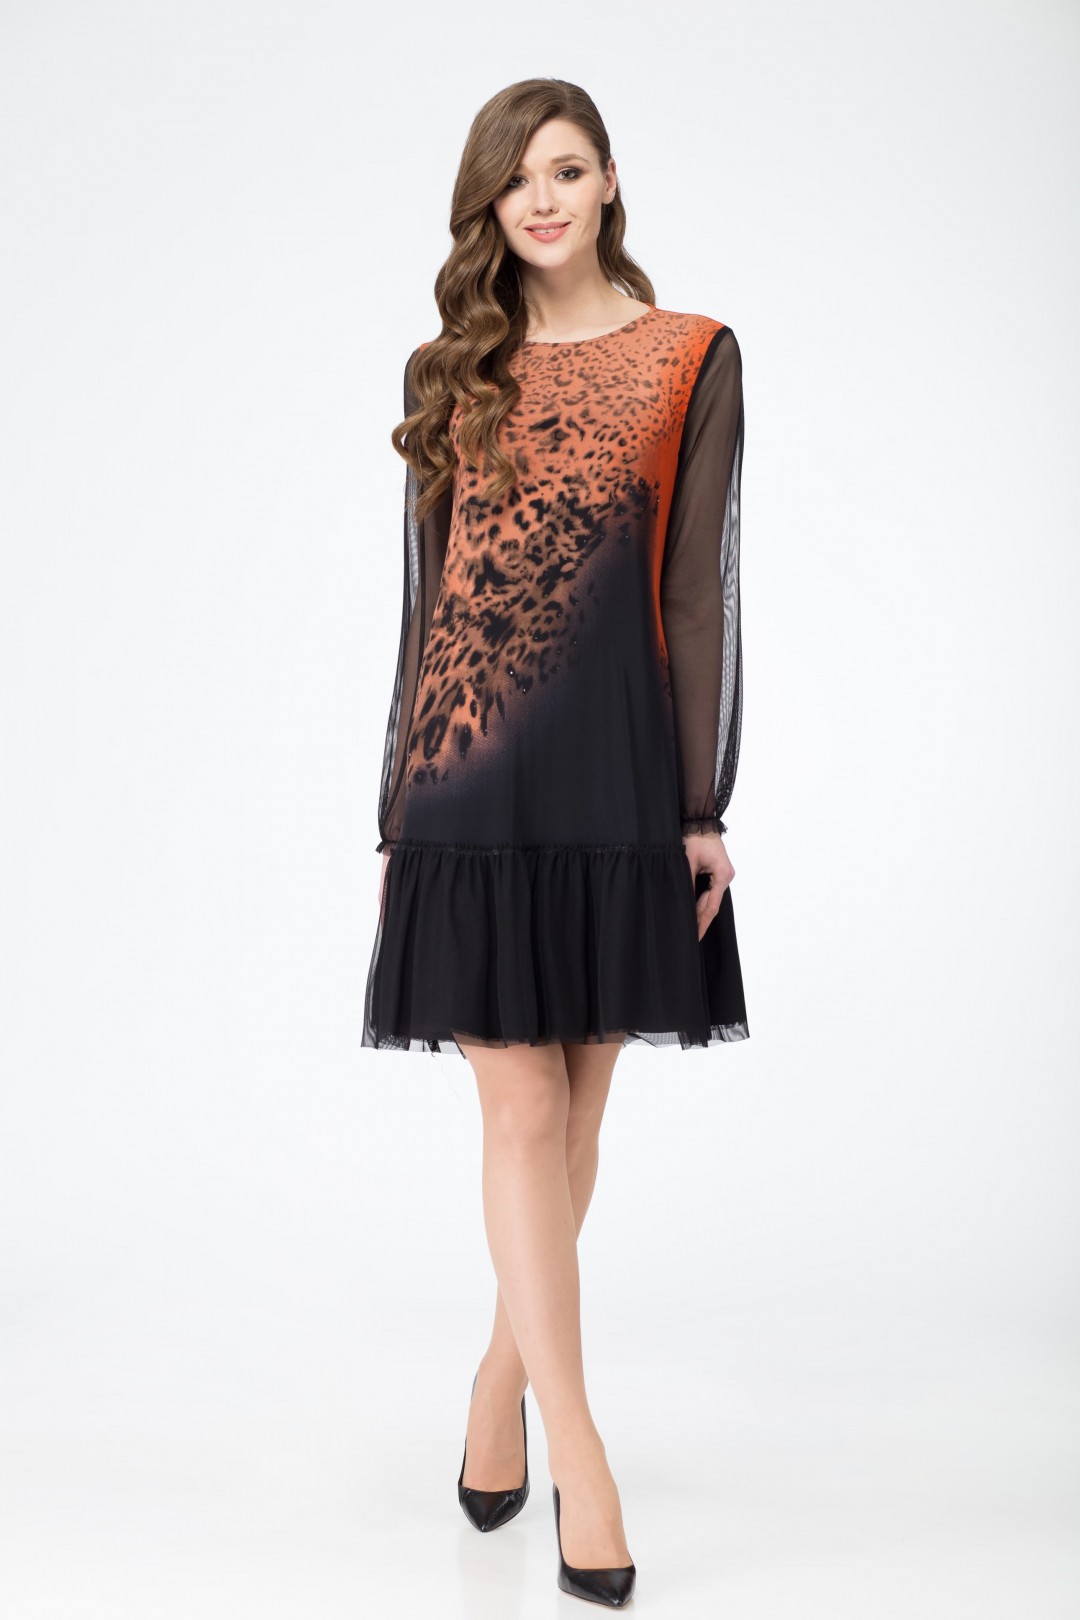 Платье Светлана-Стиль 1054 оранжевый+черный